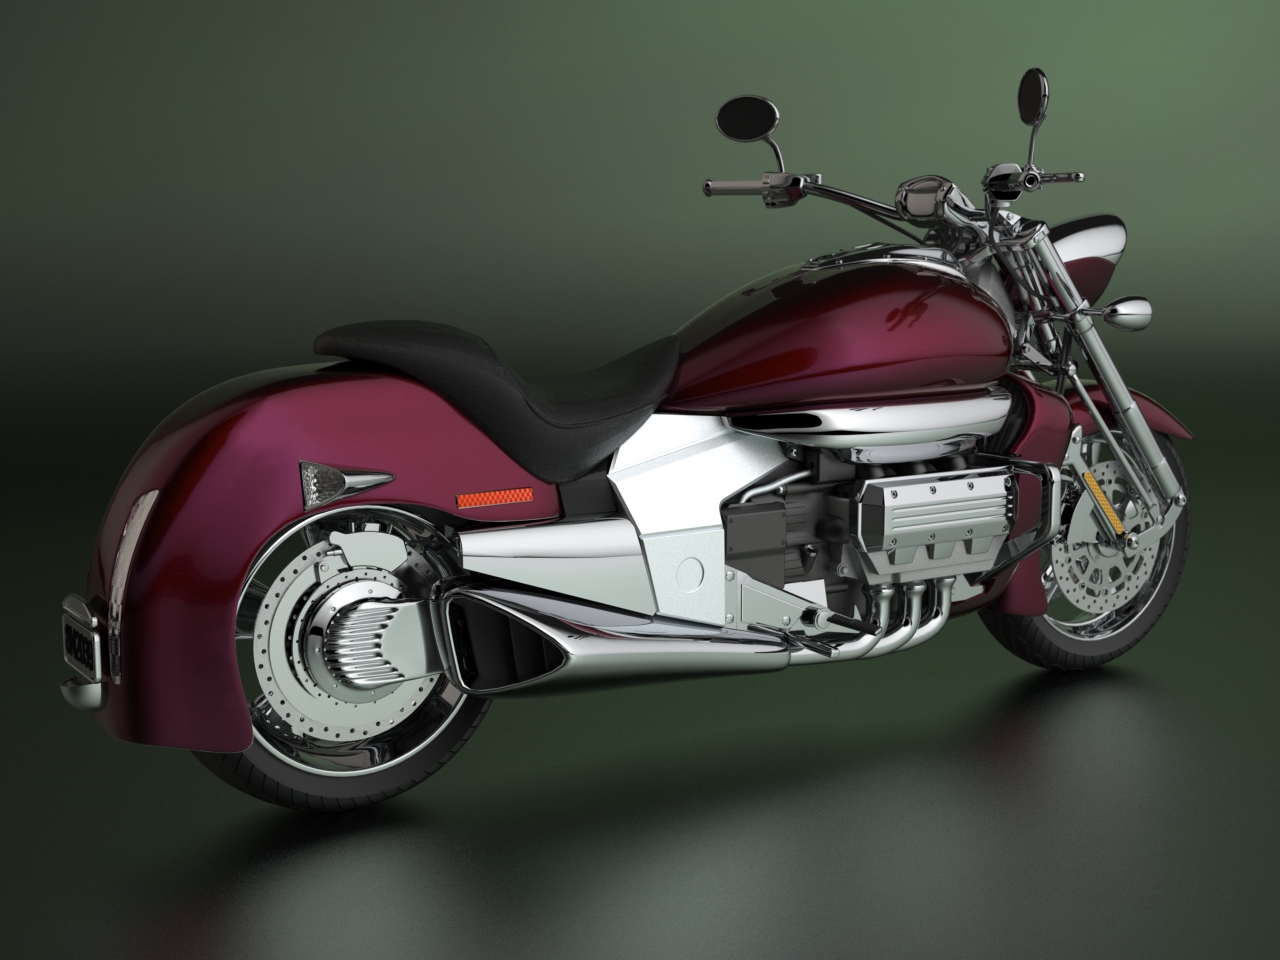 Мотоцикл honda valkyrie (хонда валькирия) - для сильных духом